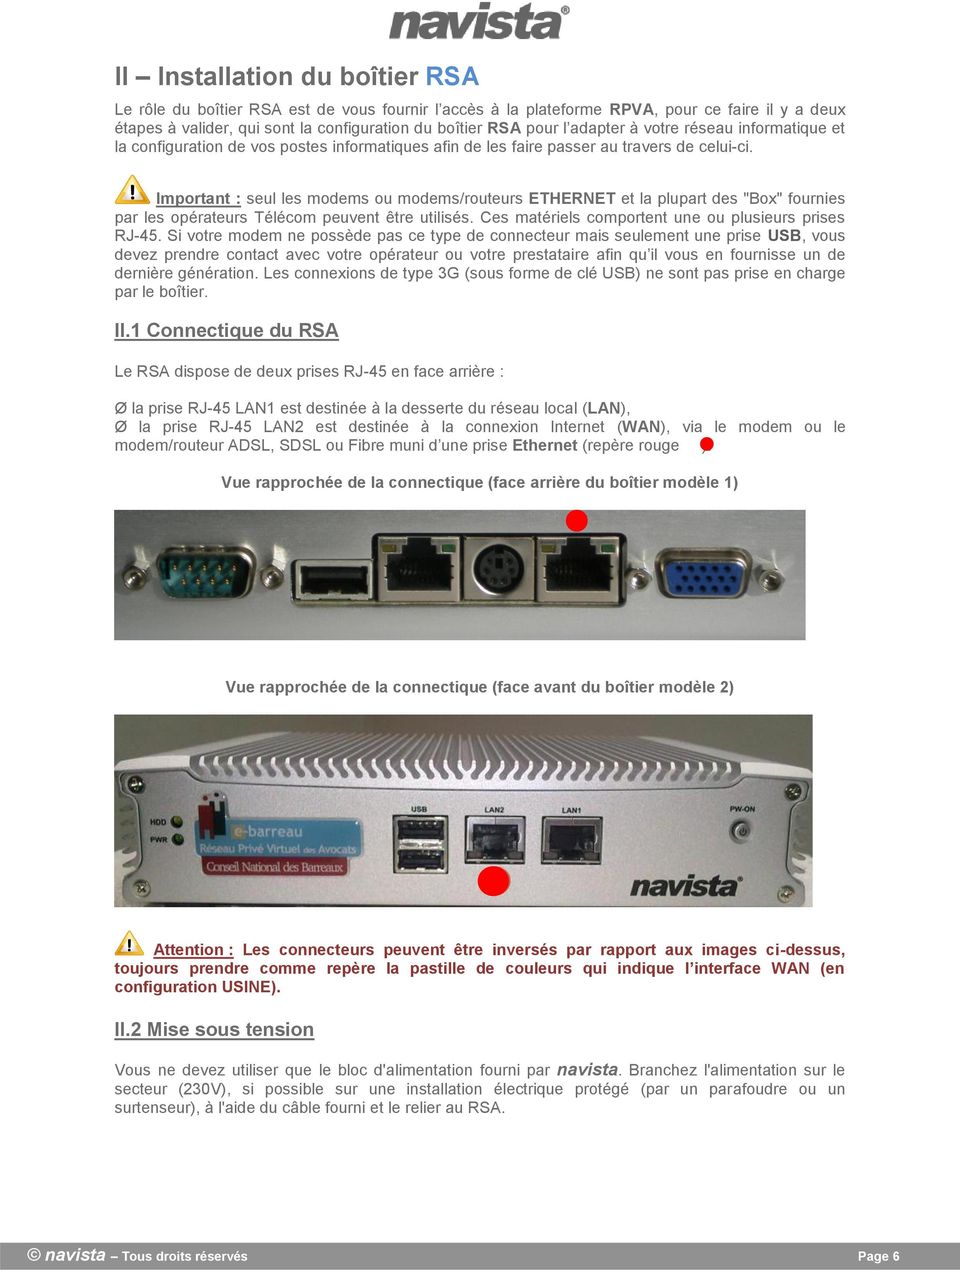 Important : seul les modems ou modems/routeurs ETHERNET et la plupart des "Box" fournies par les opérateurs Télécom peuvent être utilisés. Ces matériels comportent une ou plusieurs prises RJ-45.